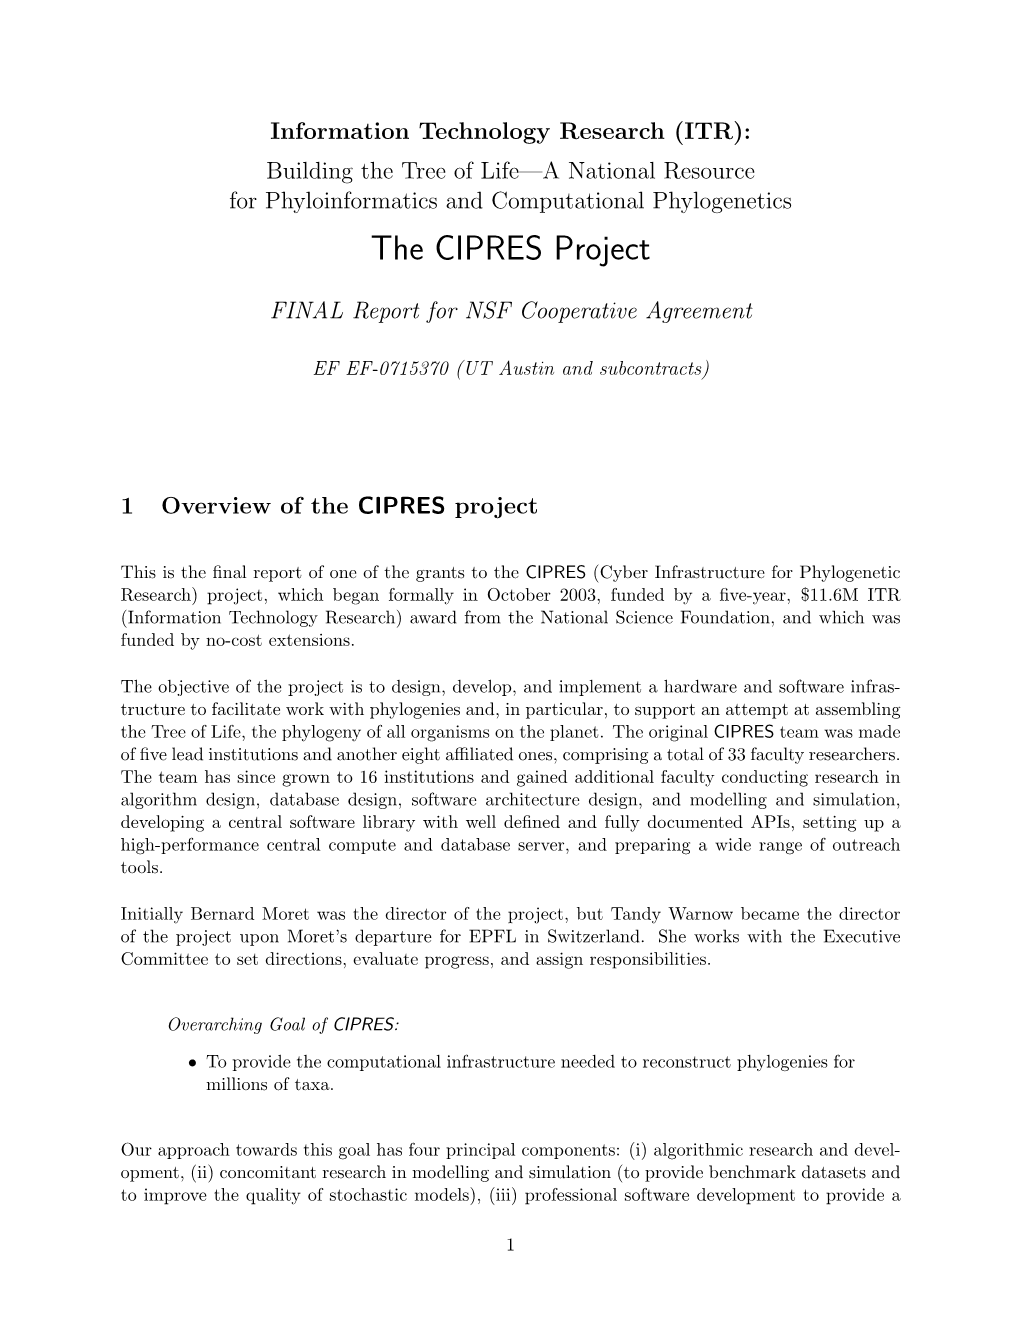 CIPRES Final Report